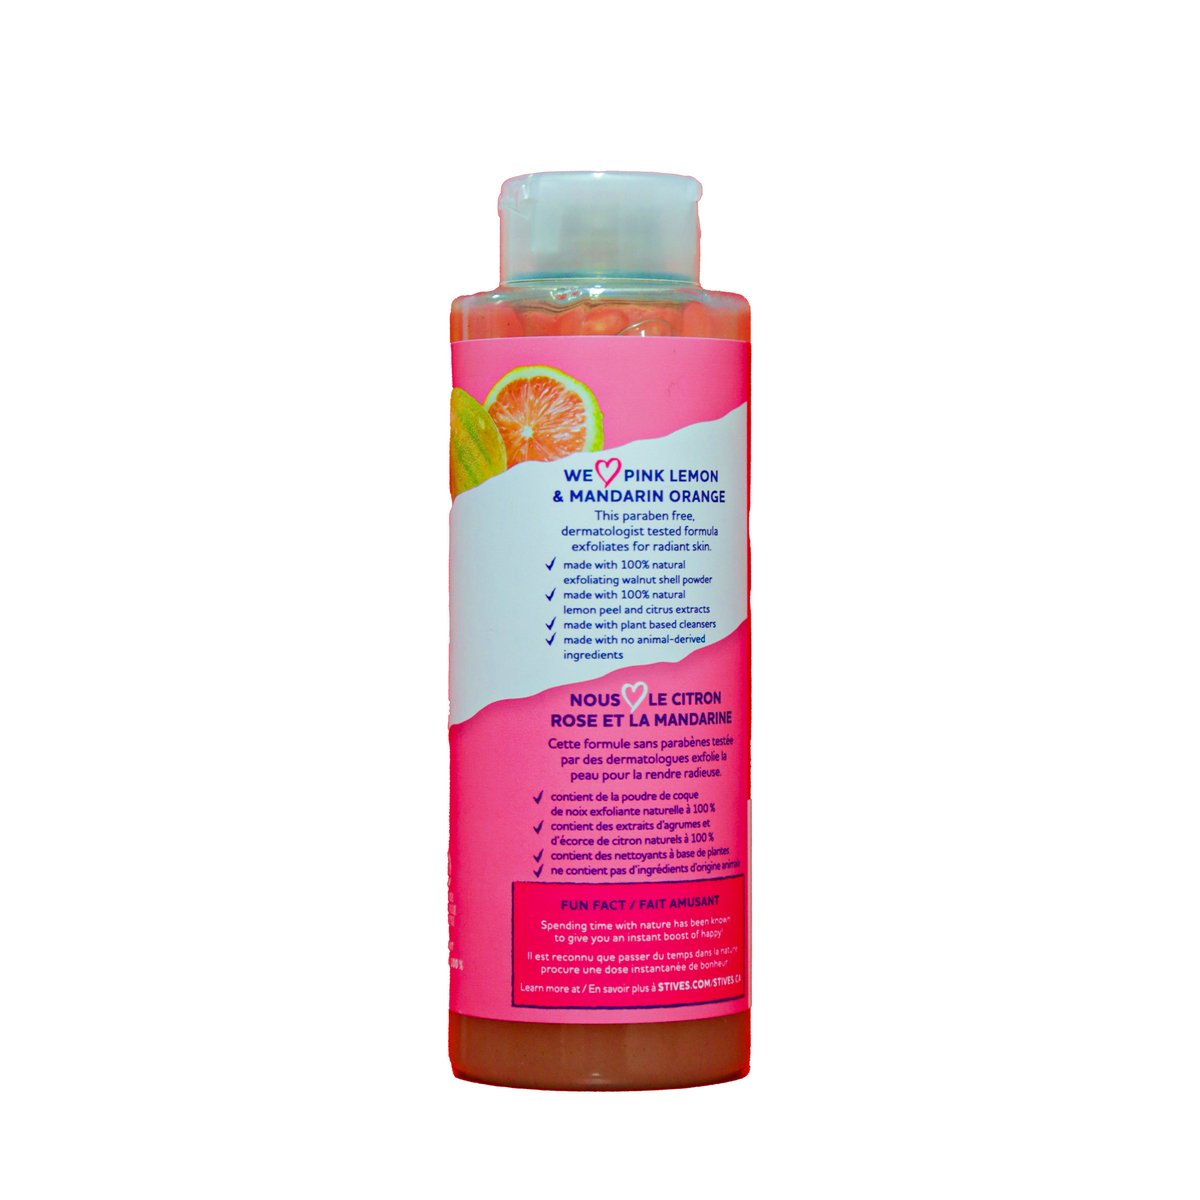 St. Ives Pink Lemon & Mandarin Orange Exfoliating Body Wash 473 ml